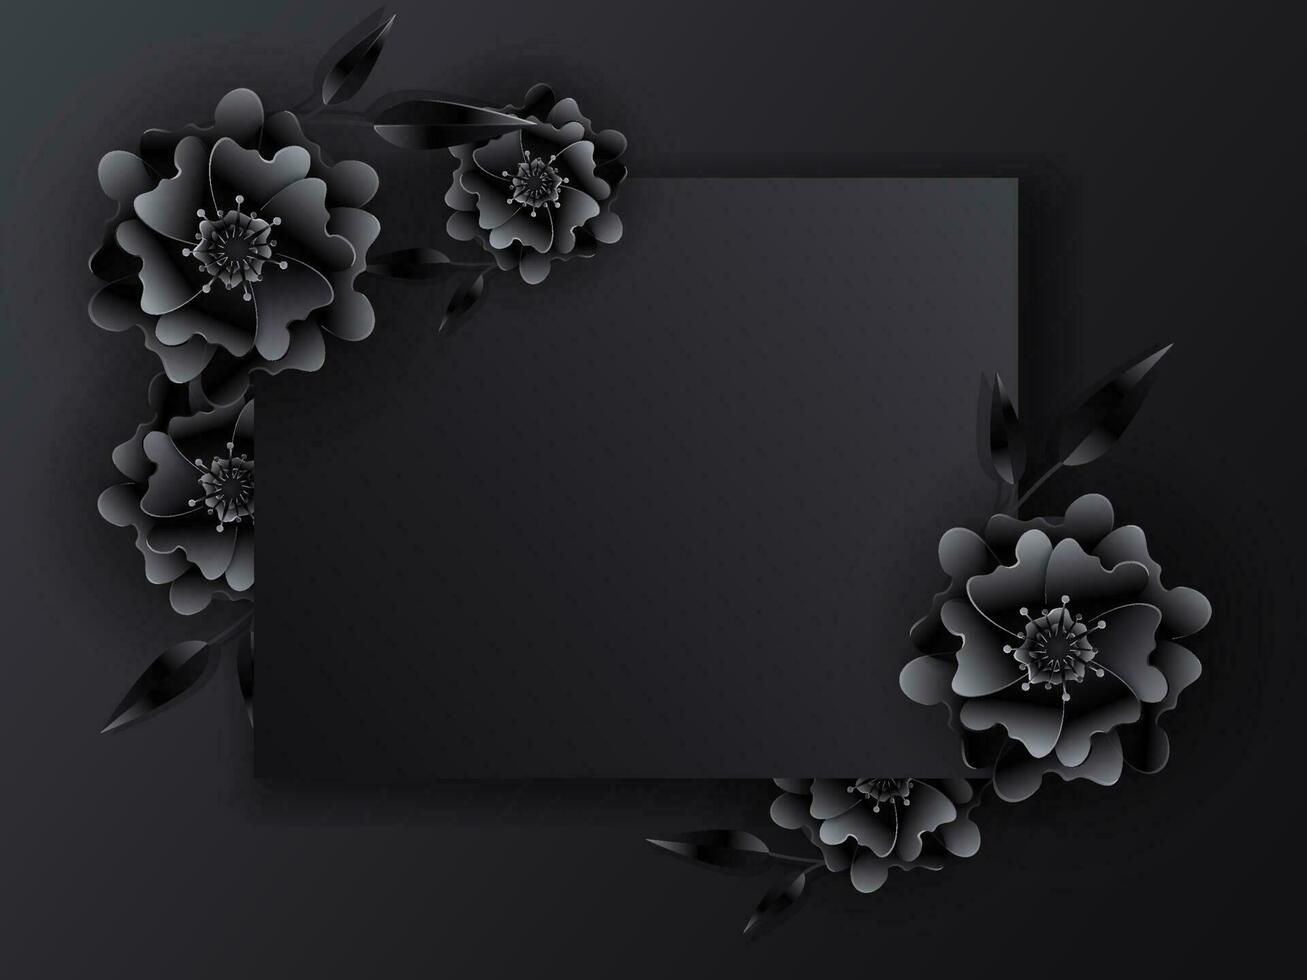 papel cortar flores y hojas decorado en negro antecedentes con espacio para mensaje. vector